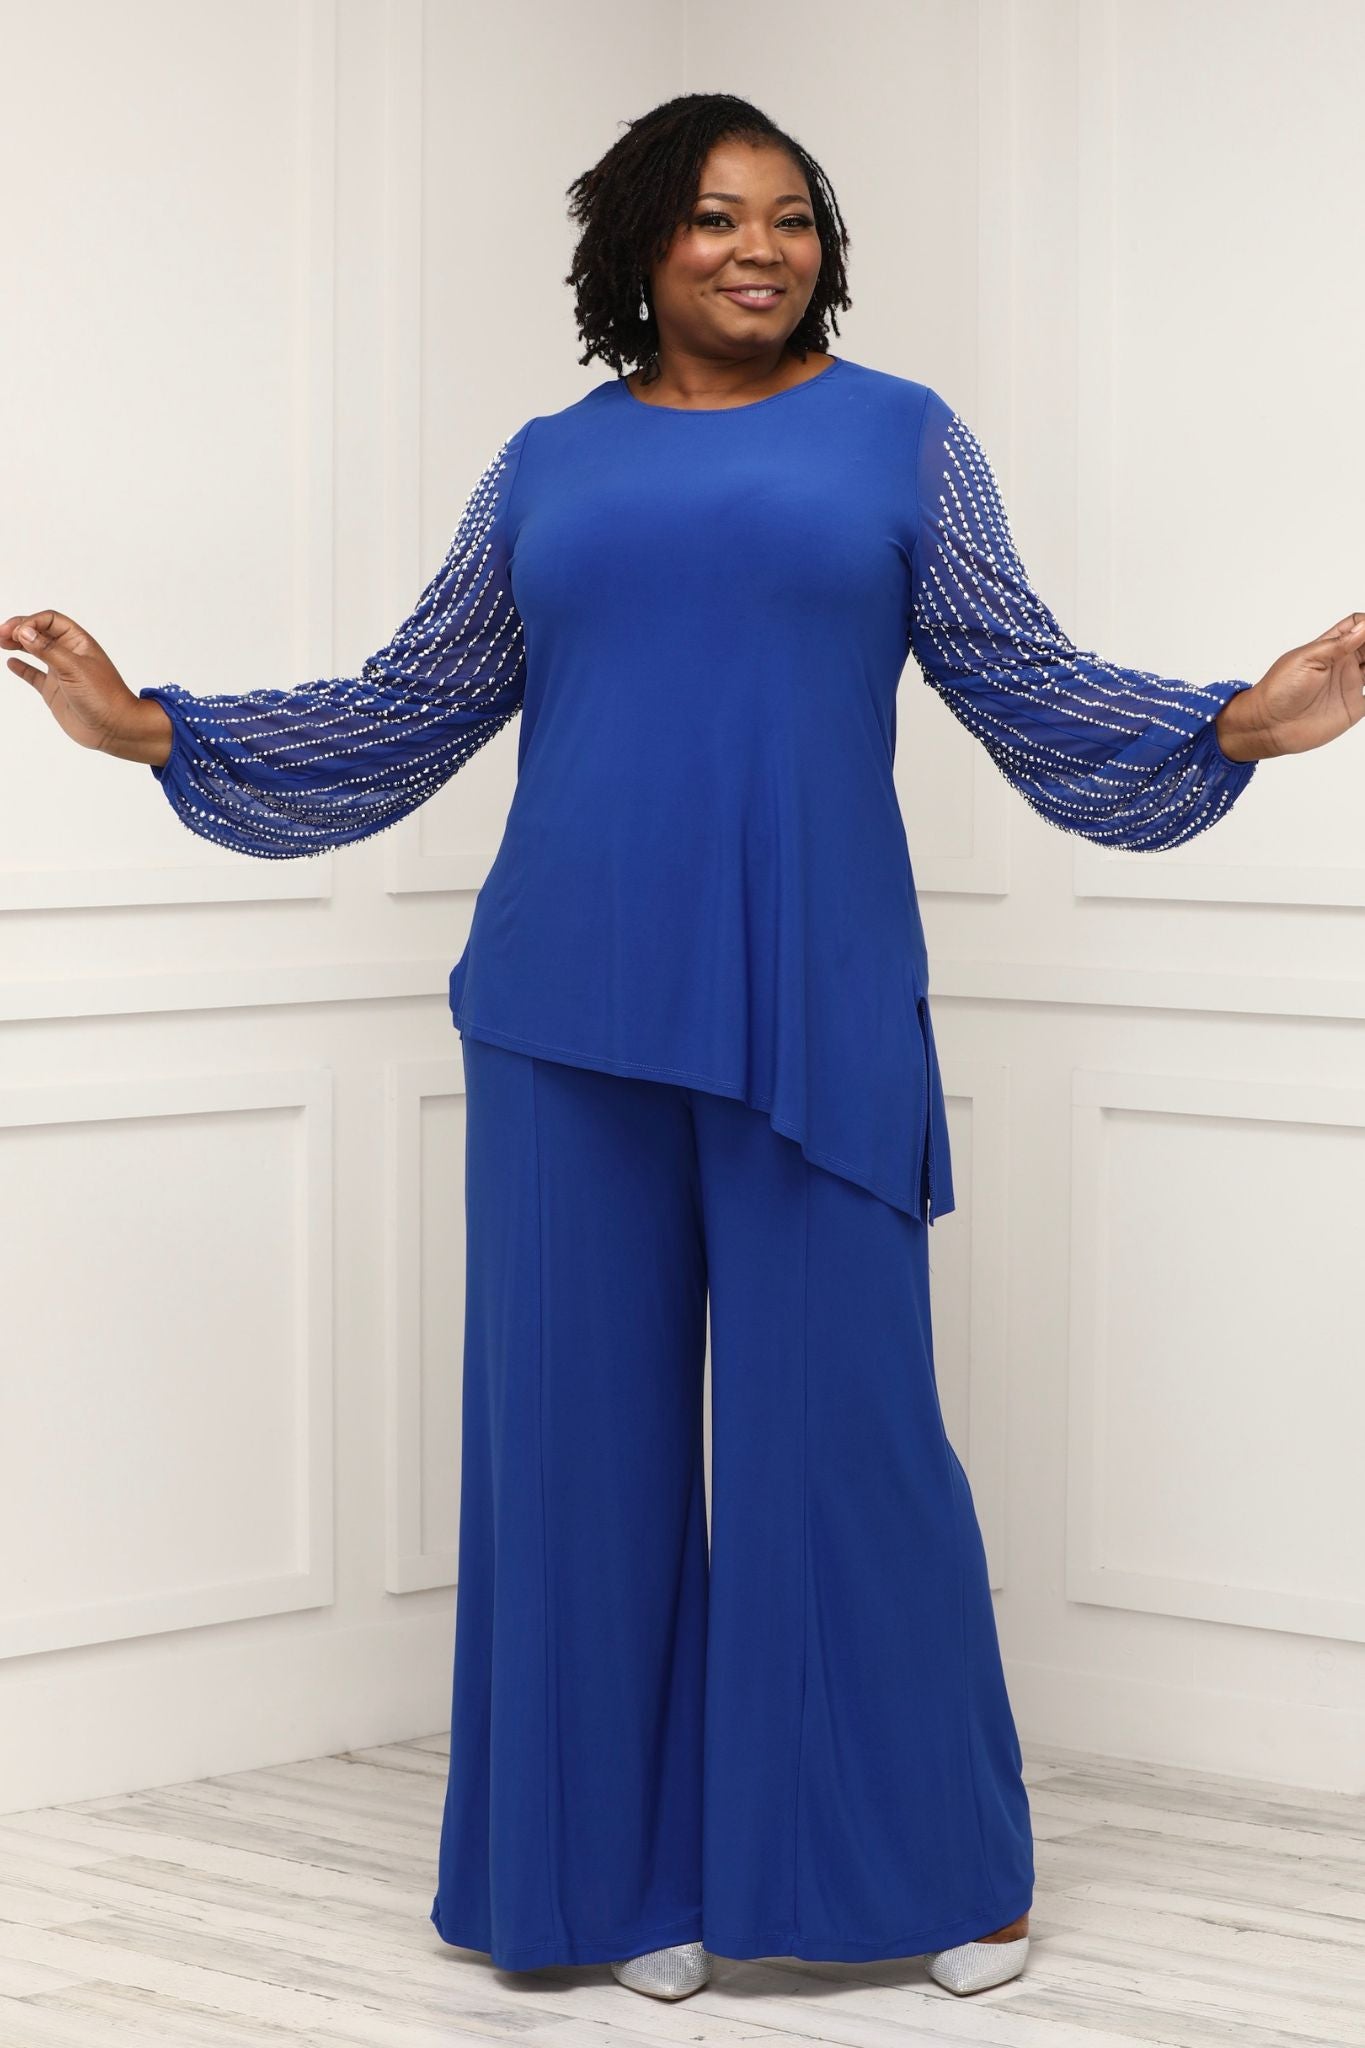 FRSASU Plus Size Long Sleeve clearance,Women's Long Sleeve Solid Suit Pants  Elegant Business Suit Sets Blue 12(XXL) 